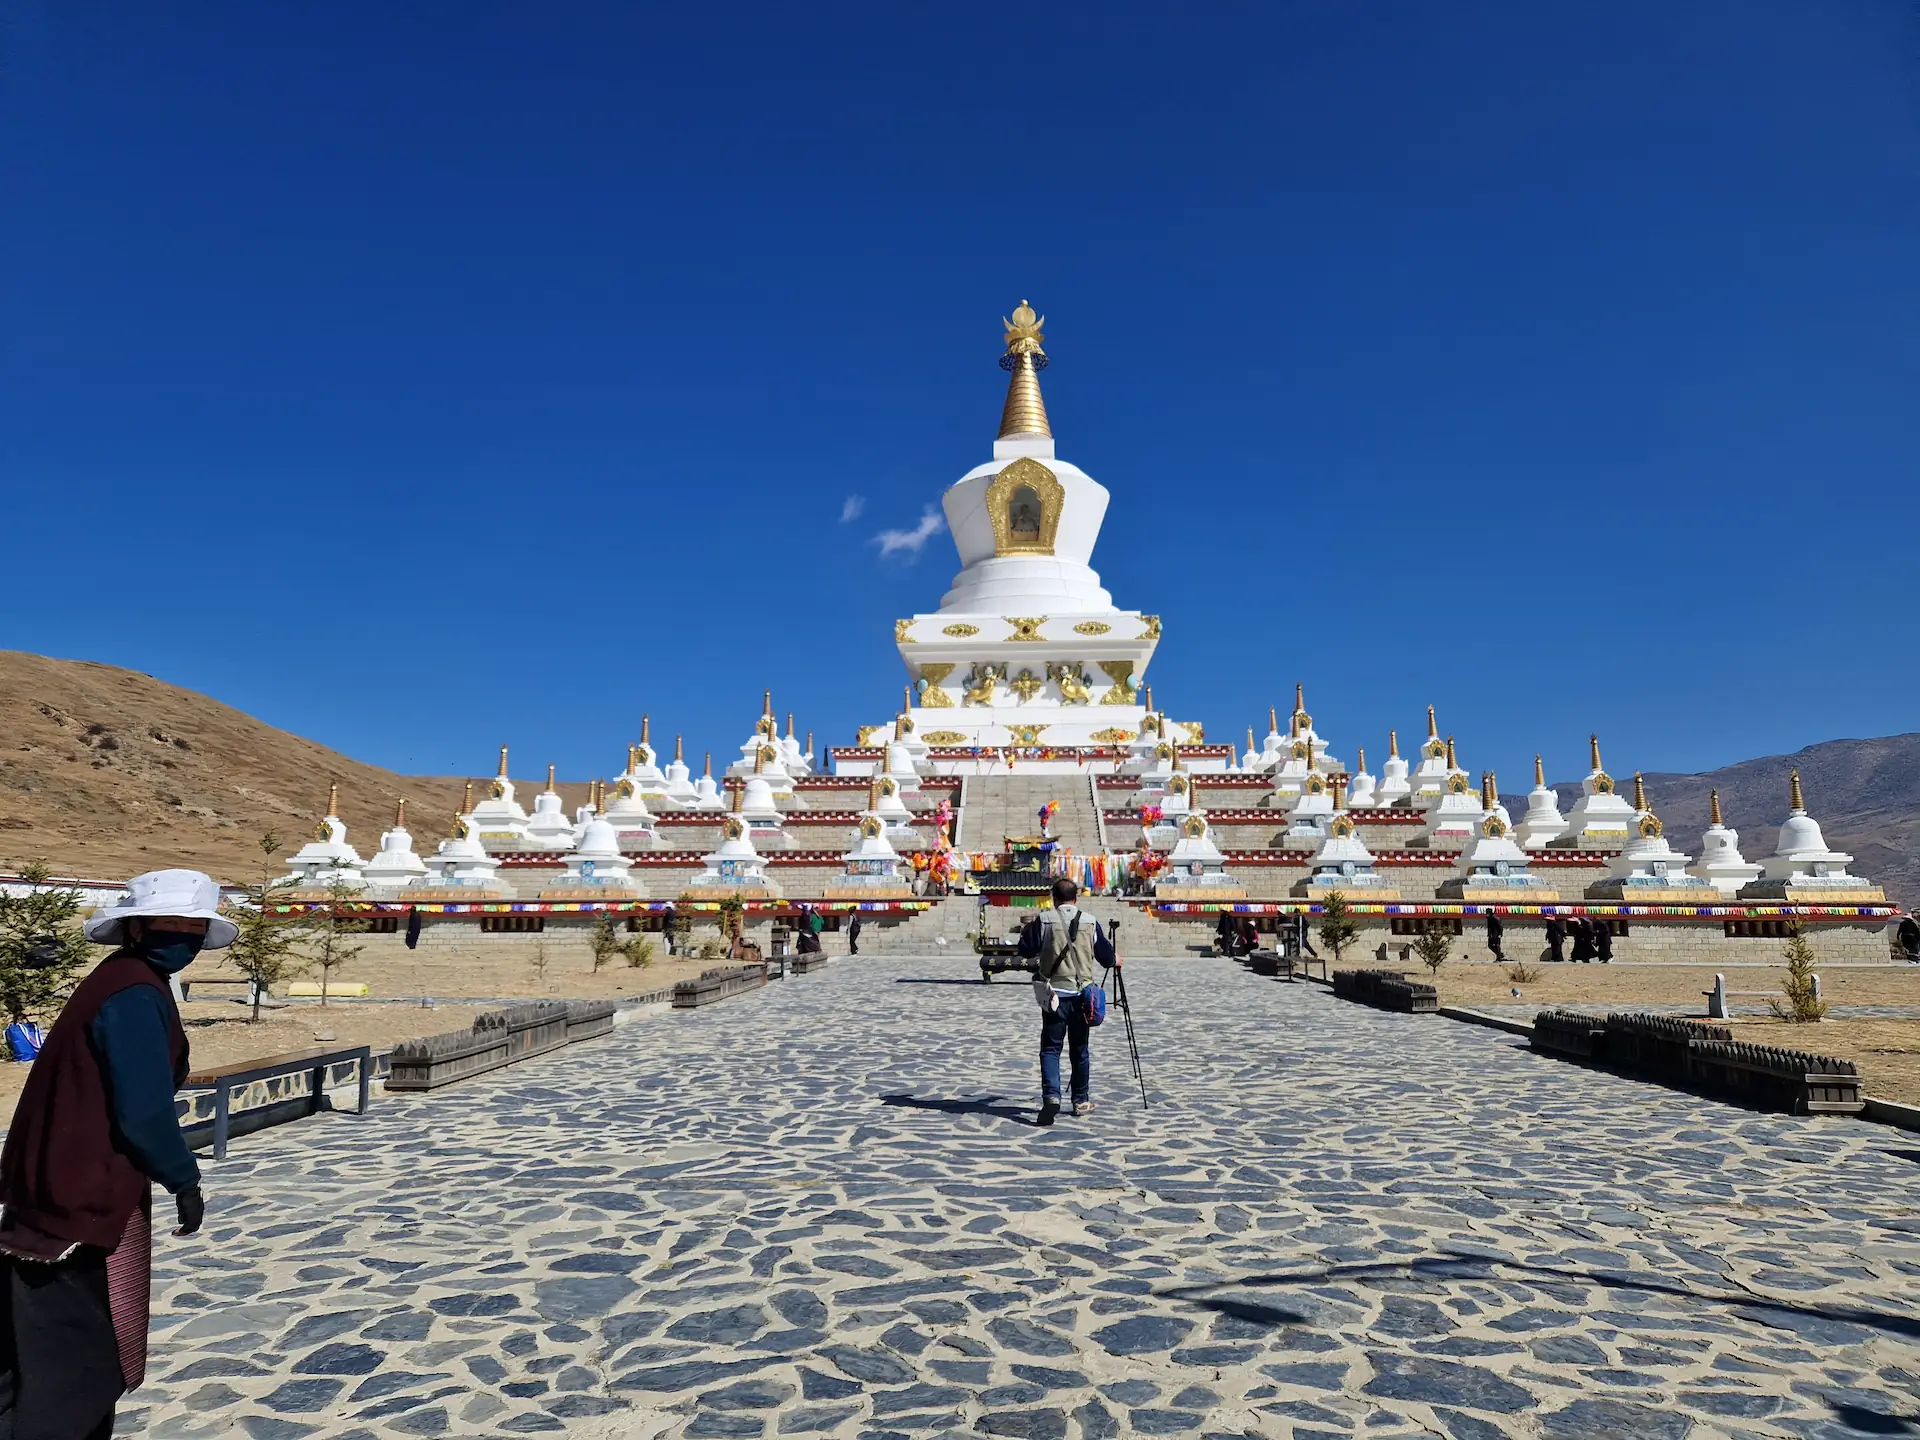 La pagode blanche de Daocheng dans un paysage de collines arides. Elle est blanche, décorée d'or